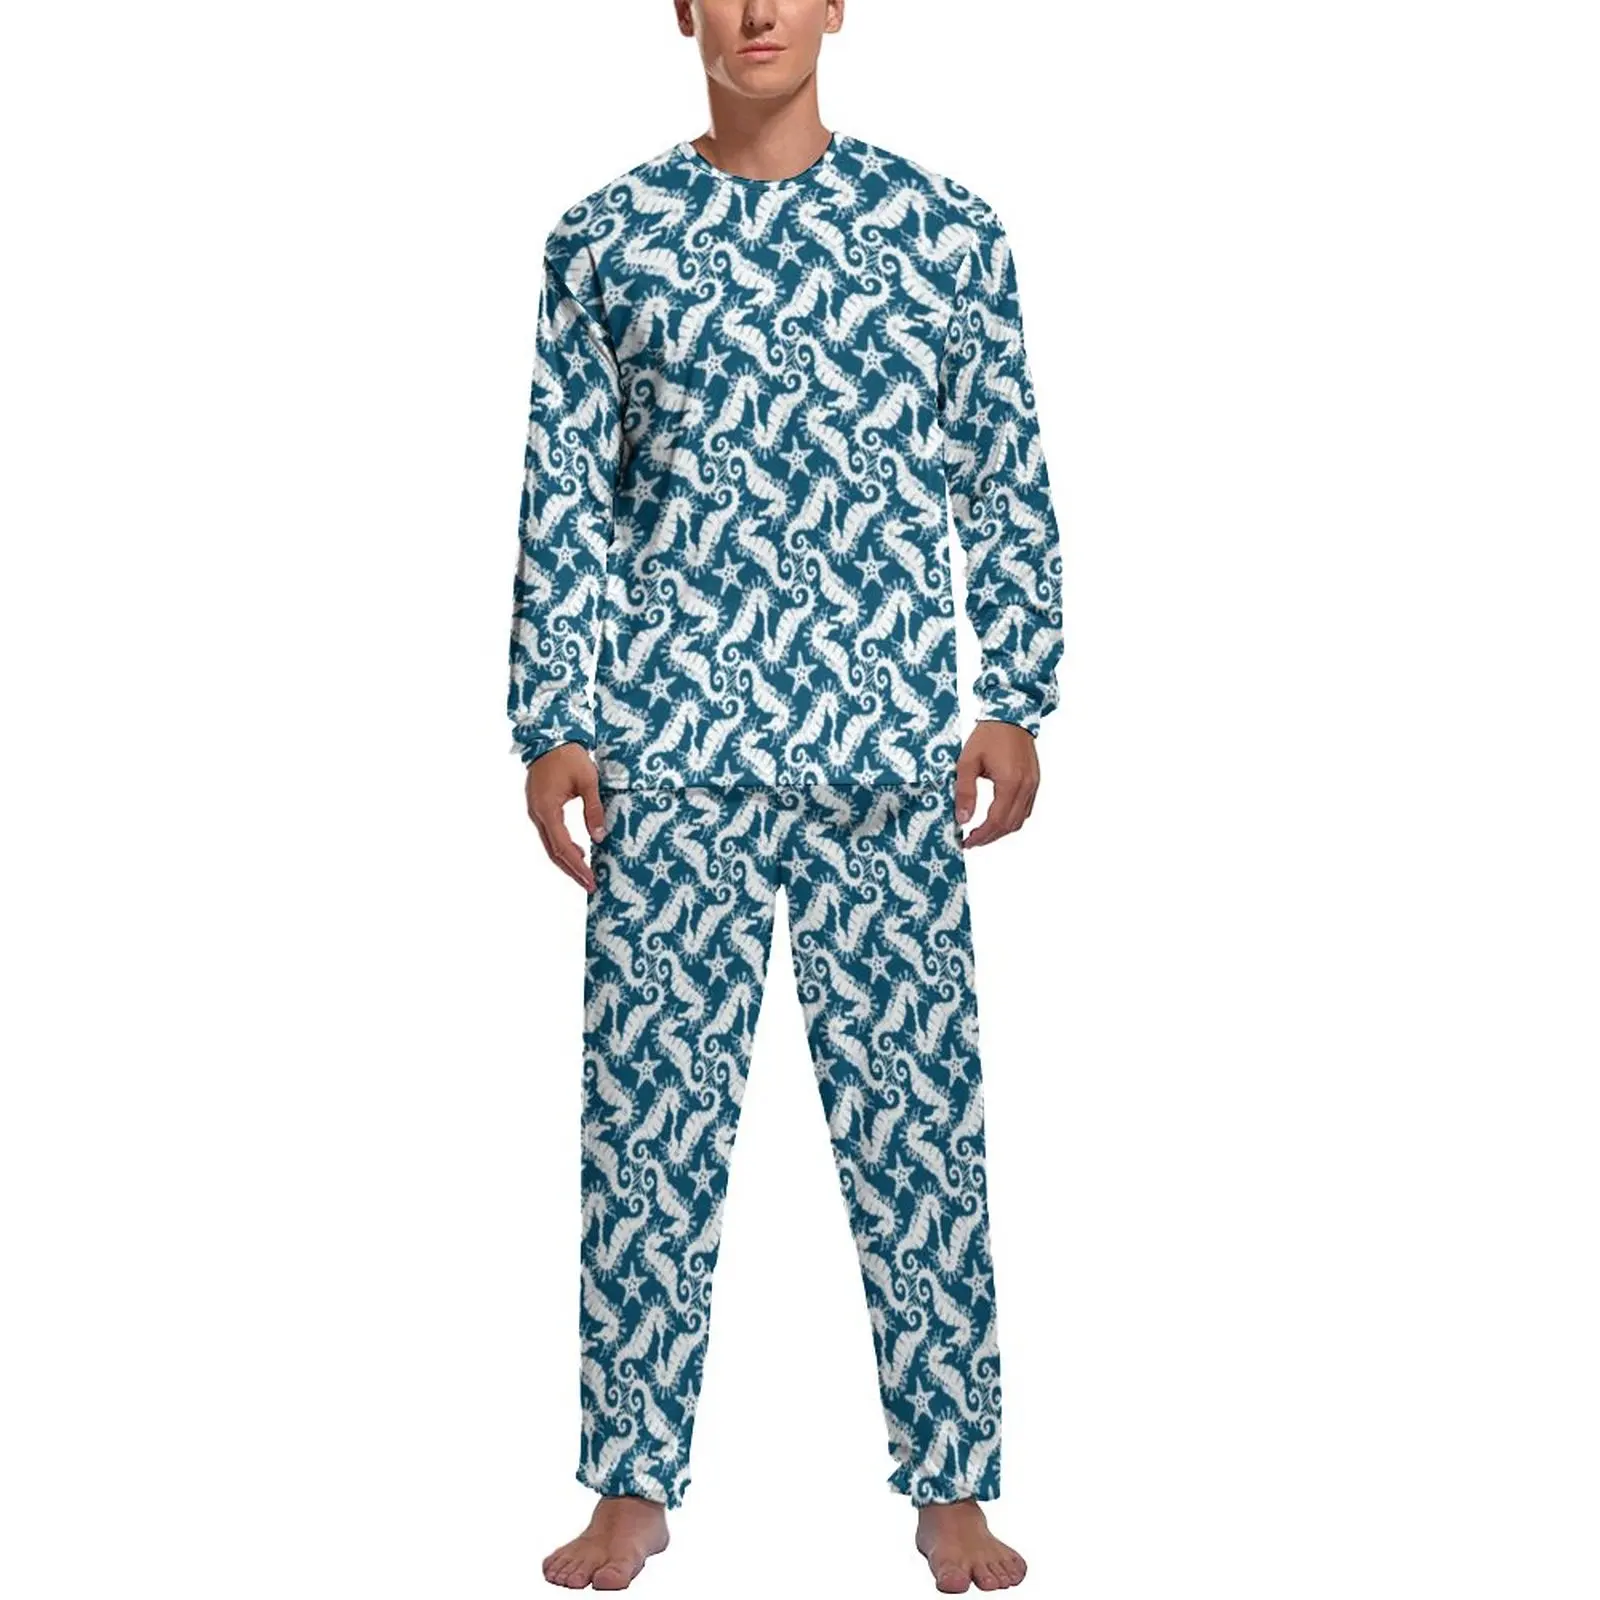 Animal Silhouette Pajamas Spring 2 Pieces Blue Sealife Print Trendy Pajama Sets Man Long Sleeve Aesthetic Design Sleepwear